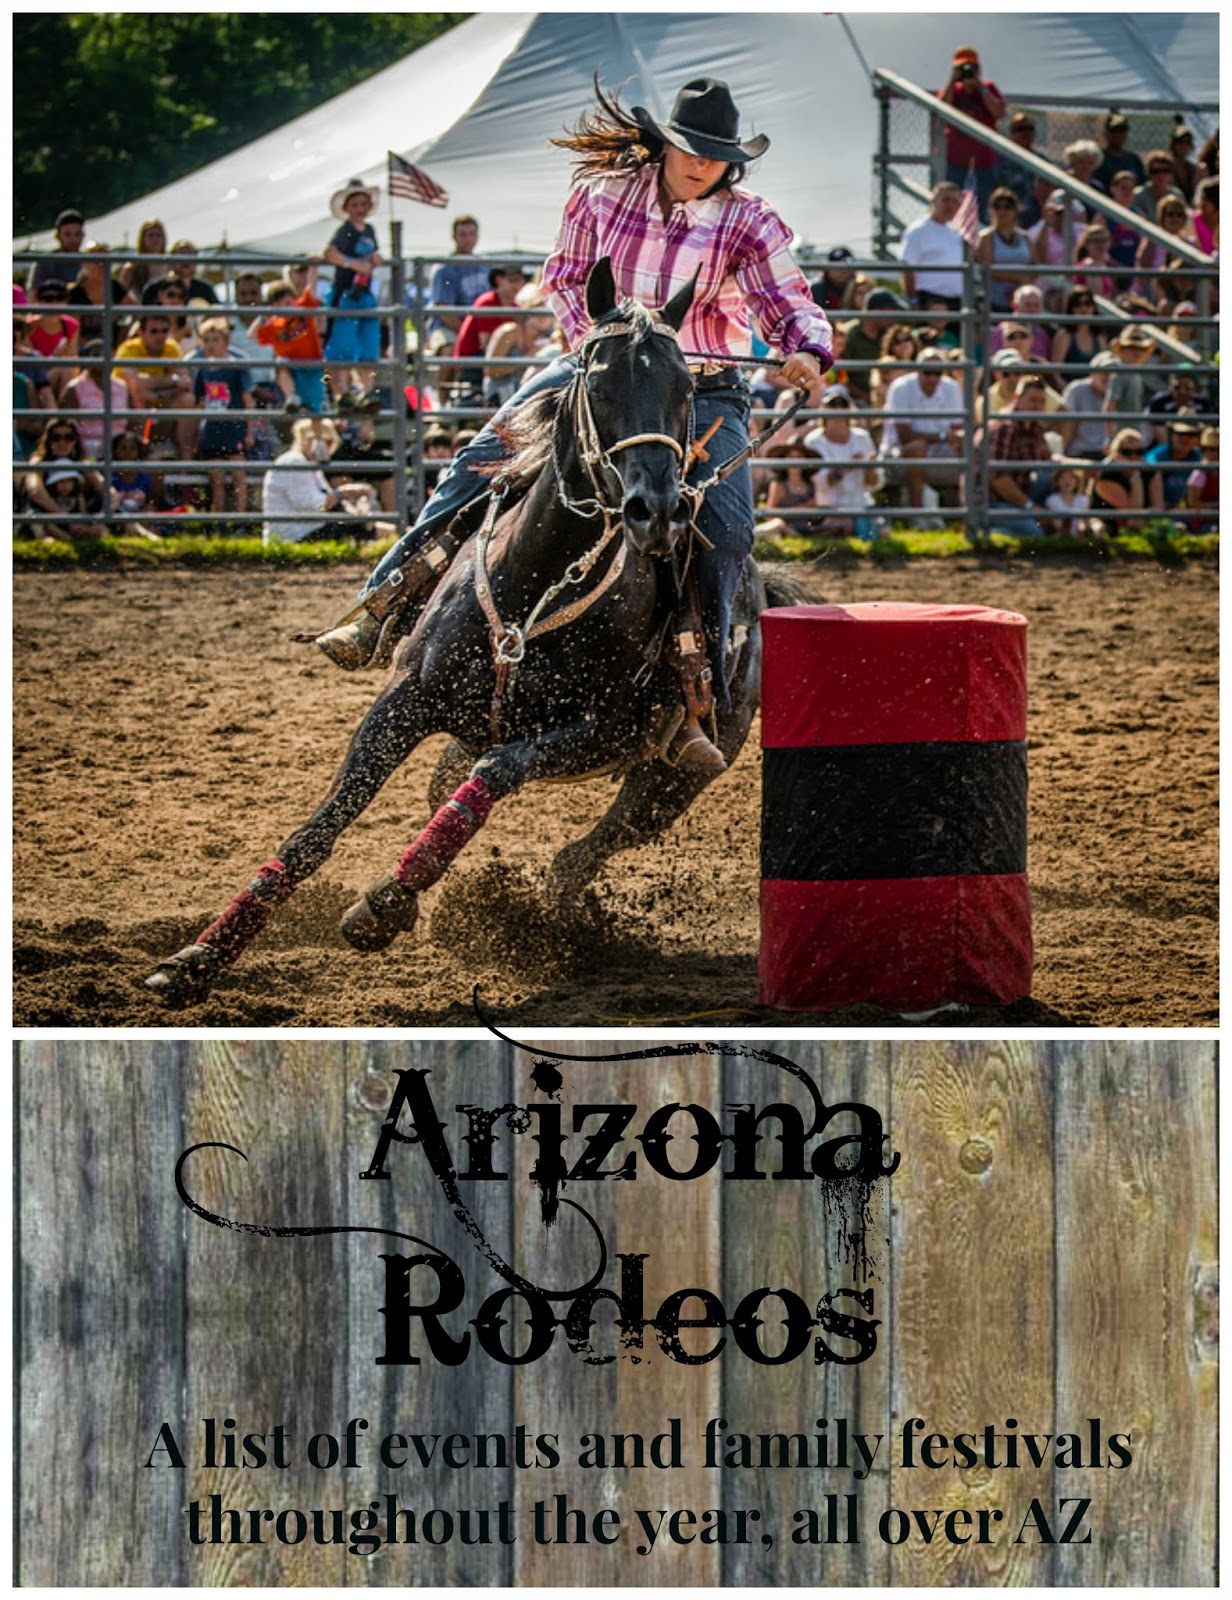 I Heart AZ Arizona Rodeos A List of Events, Carnivals, and Parades